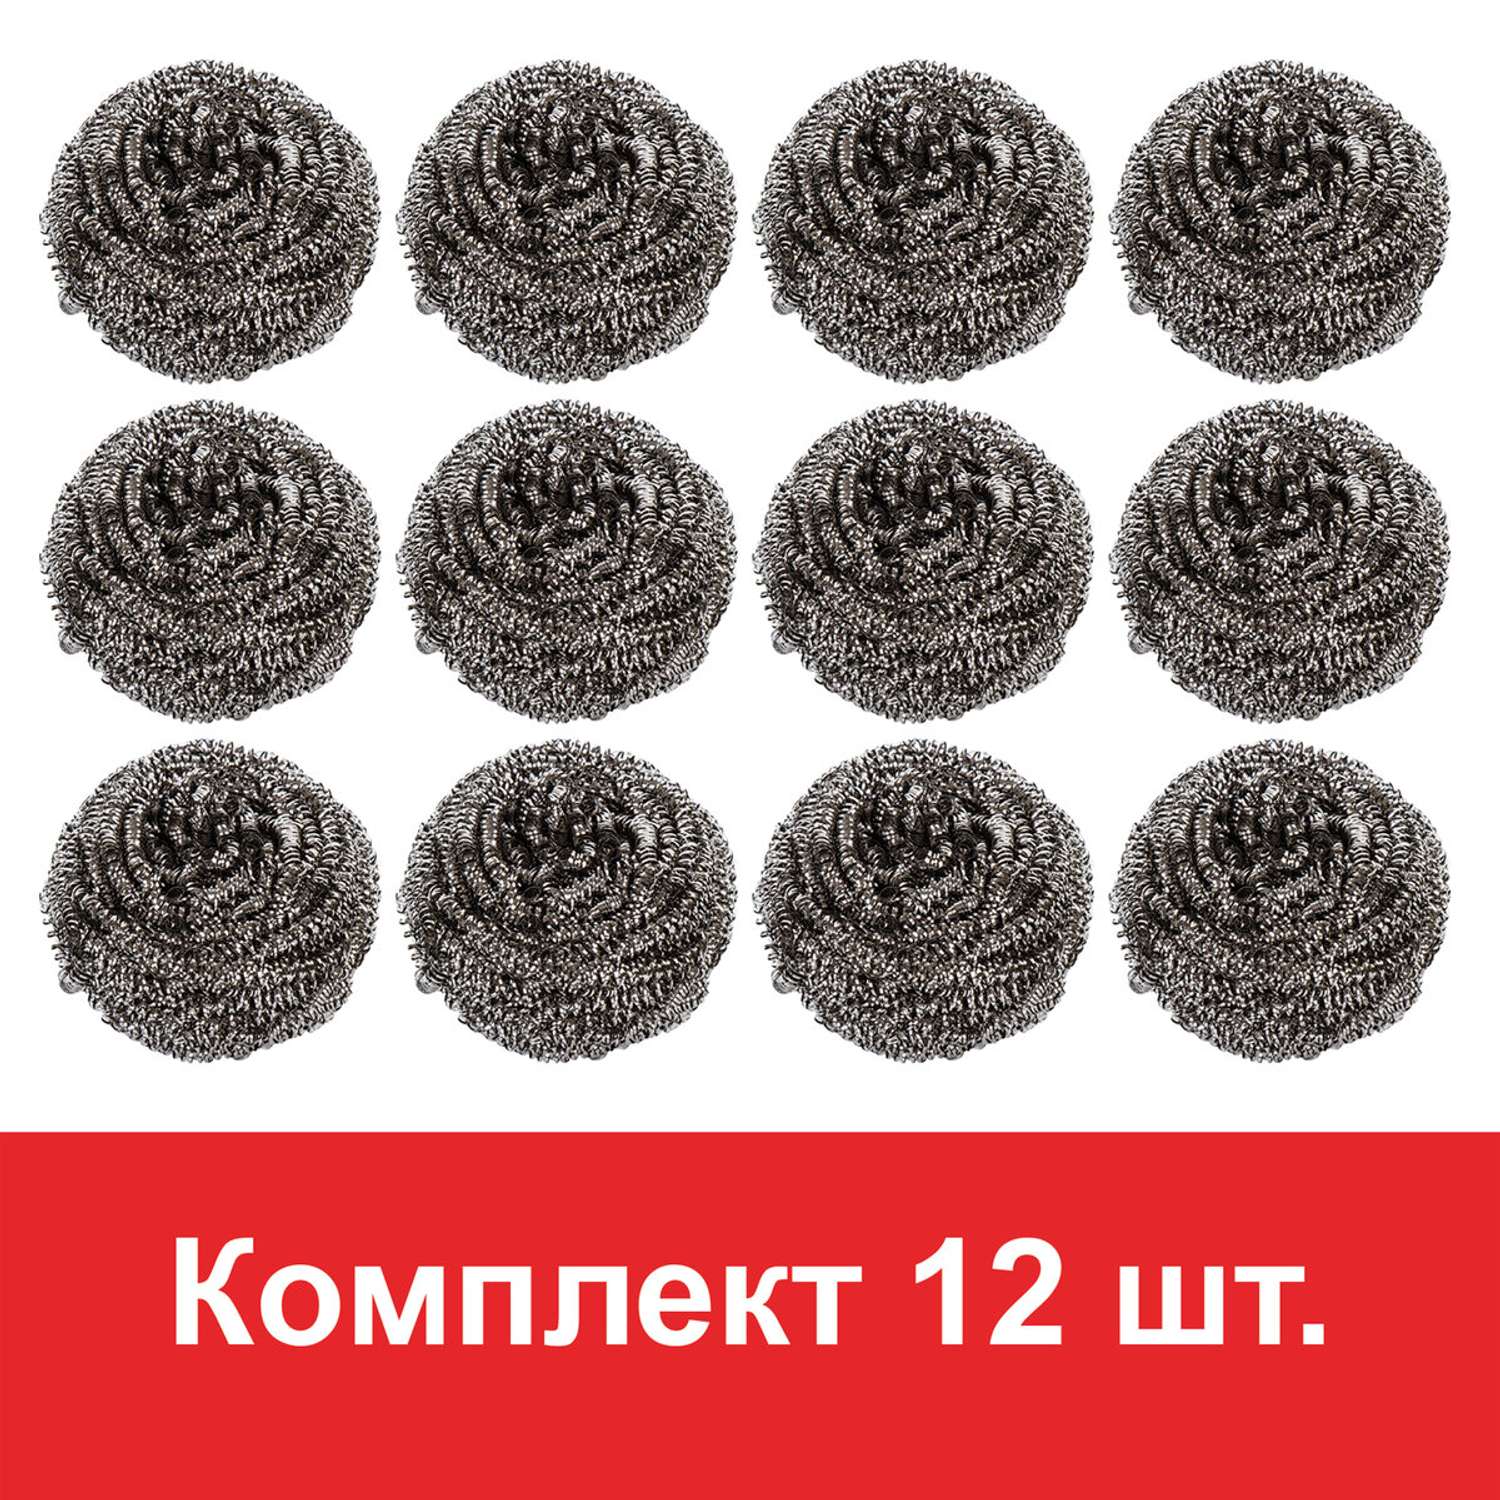 Губки для мытья посуды Лайма металлические комплект 12 шт спиральные по 15 г - фото 8